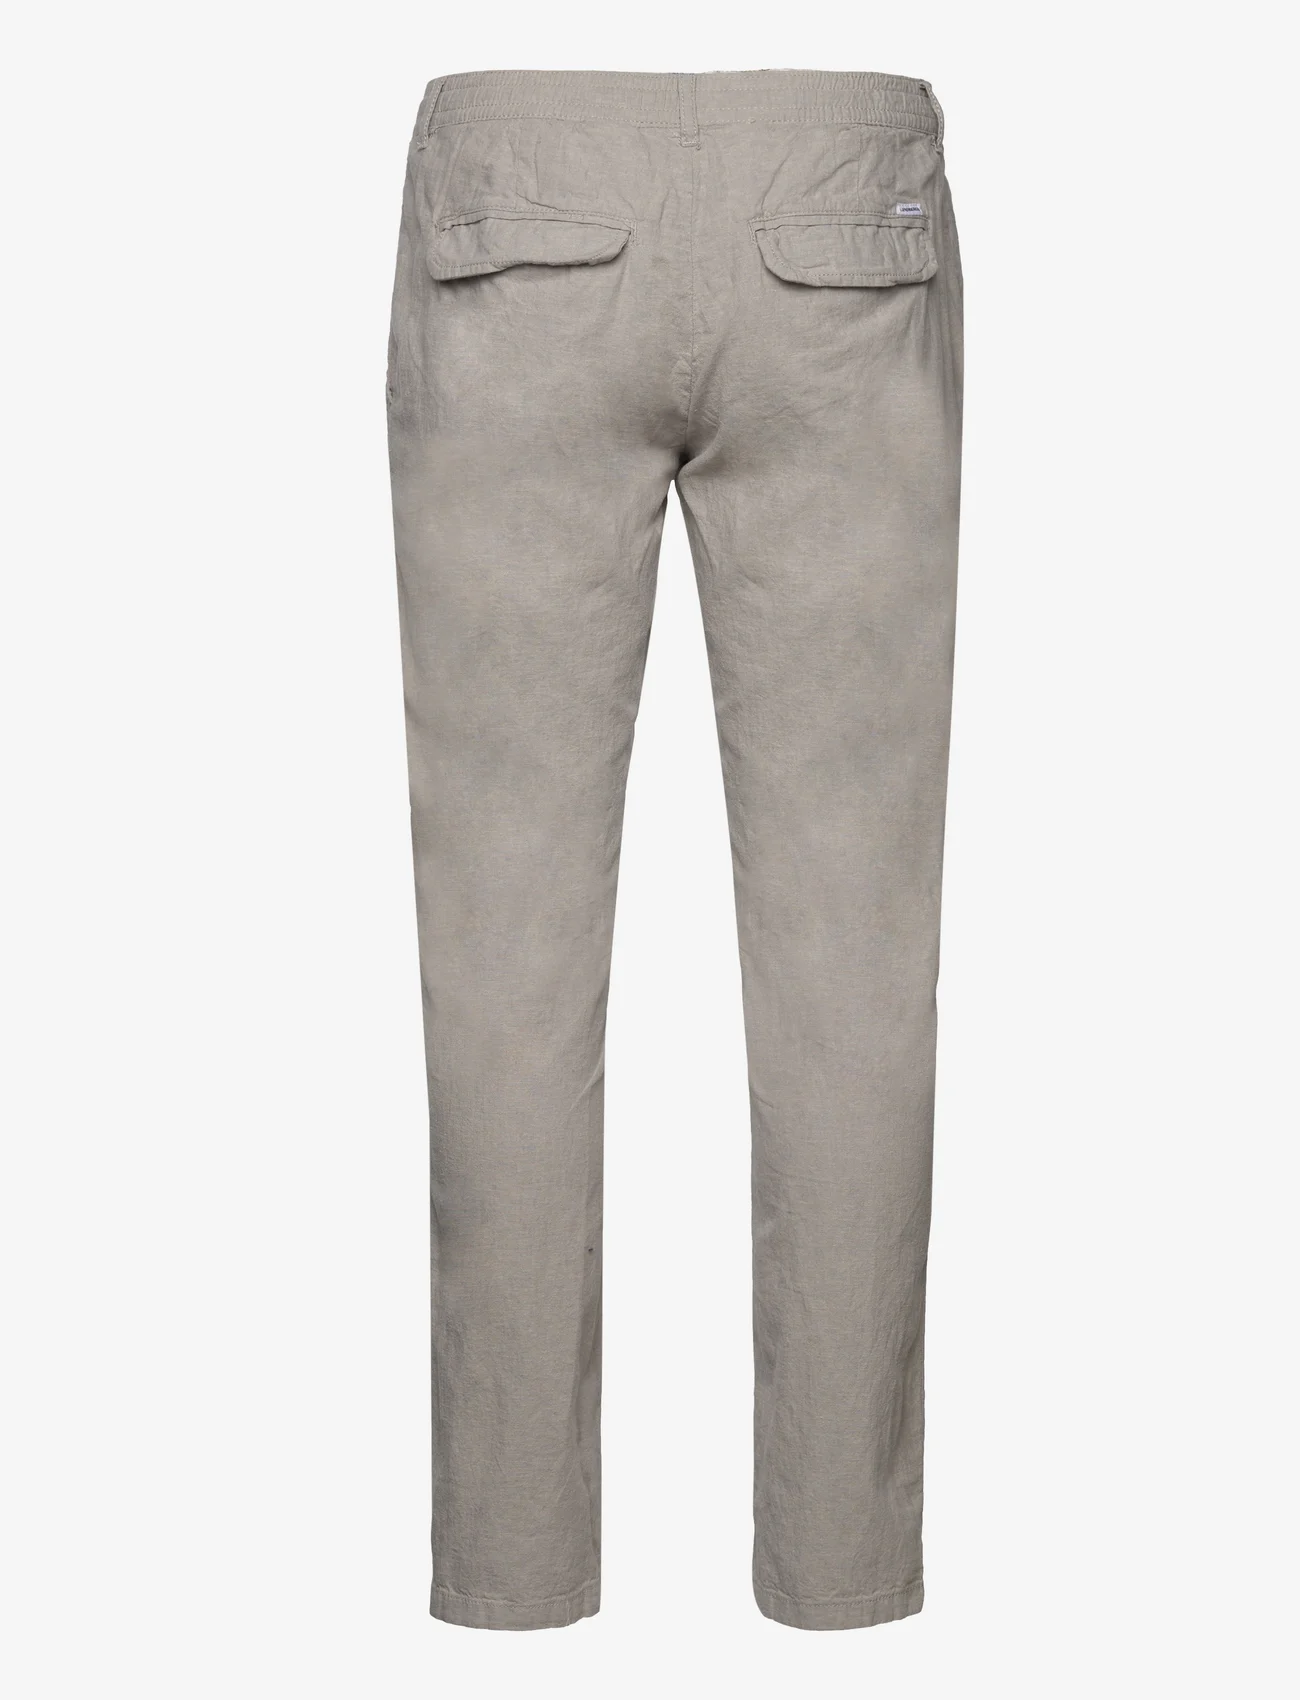 Lindbergh - Linen pants - linnen broeken - grey - 1